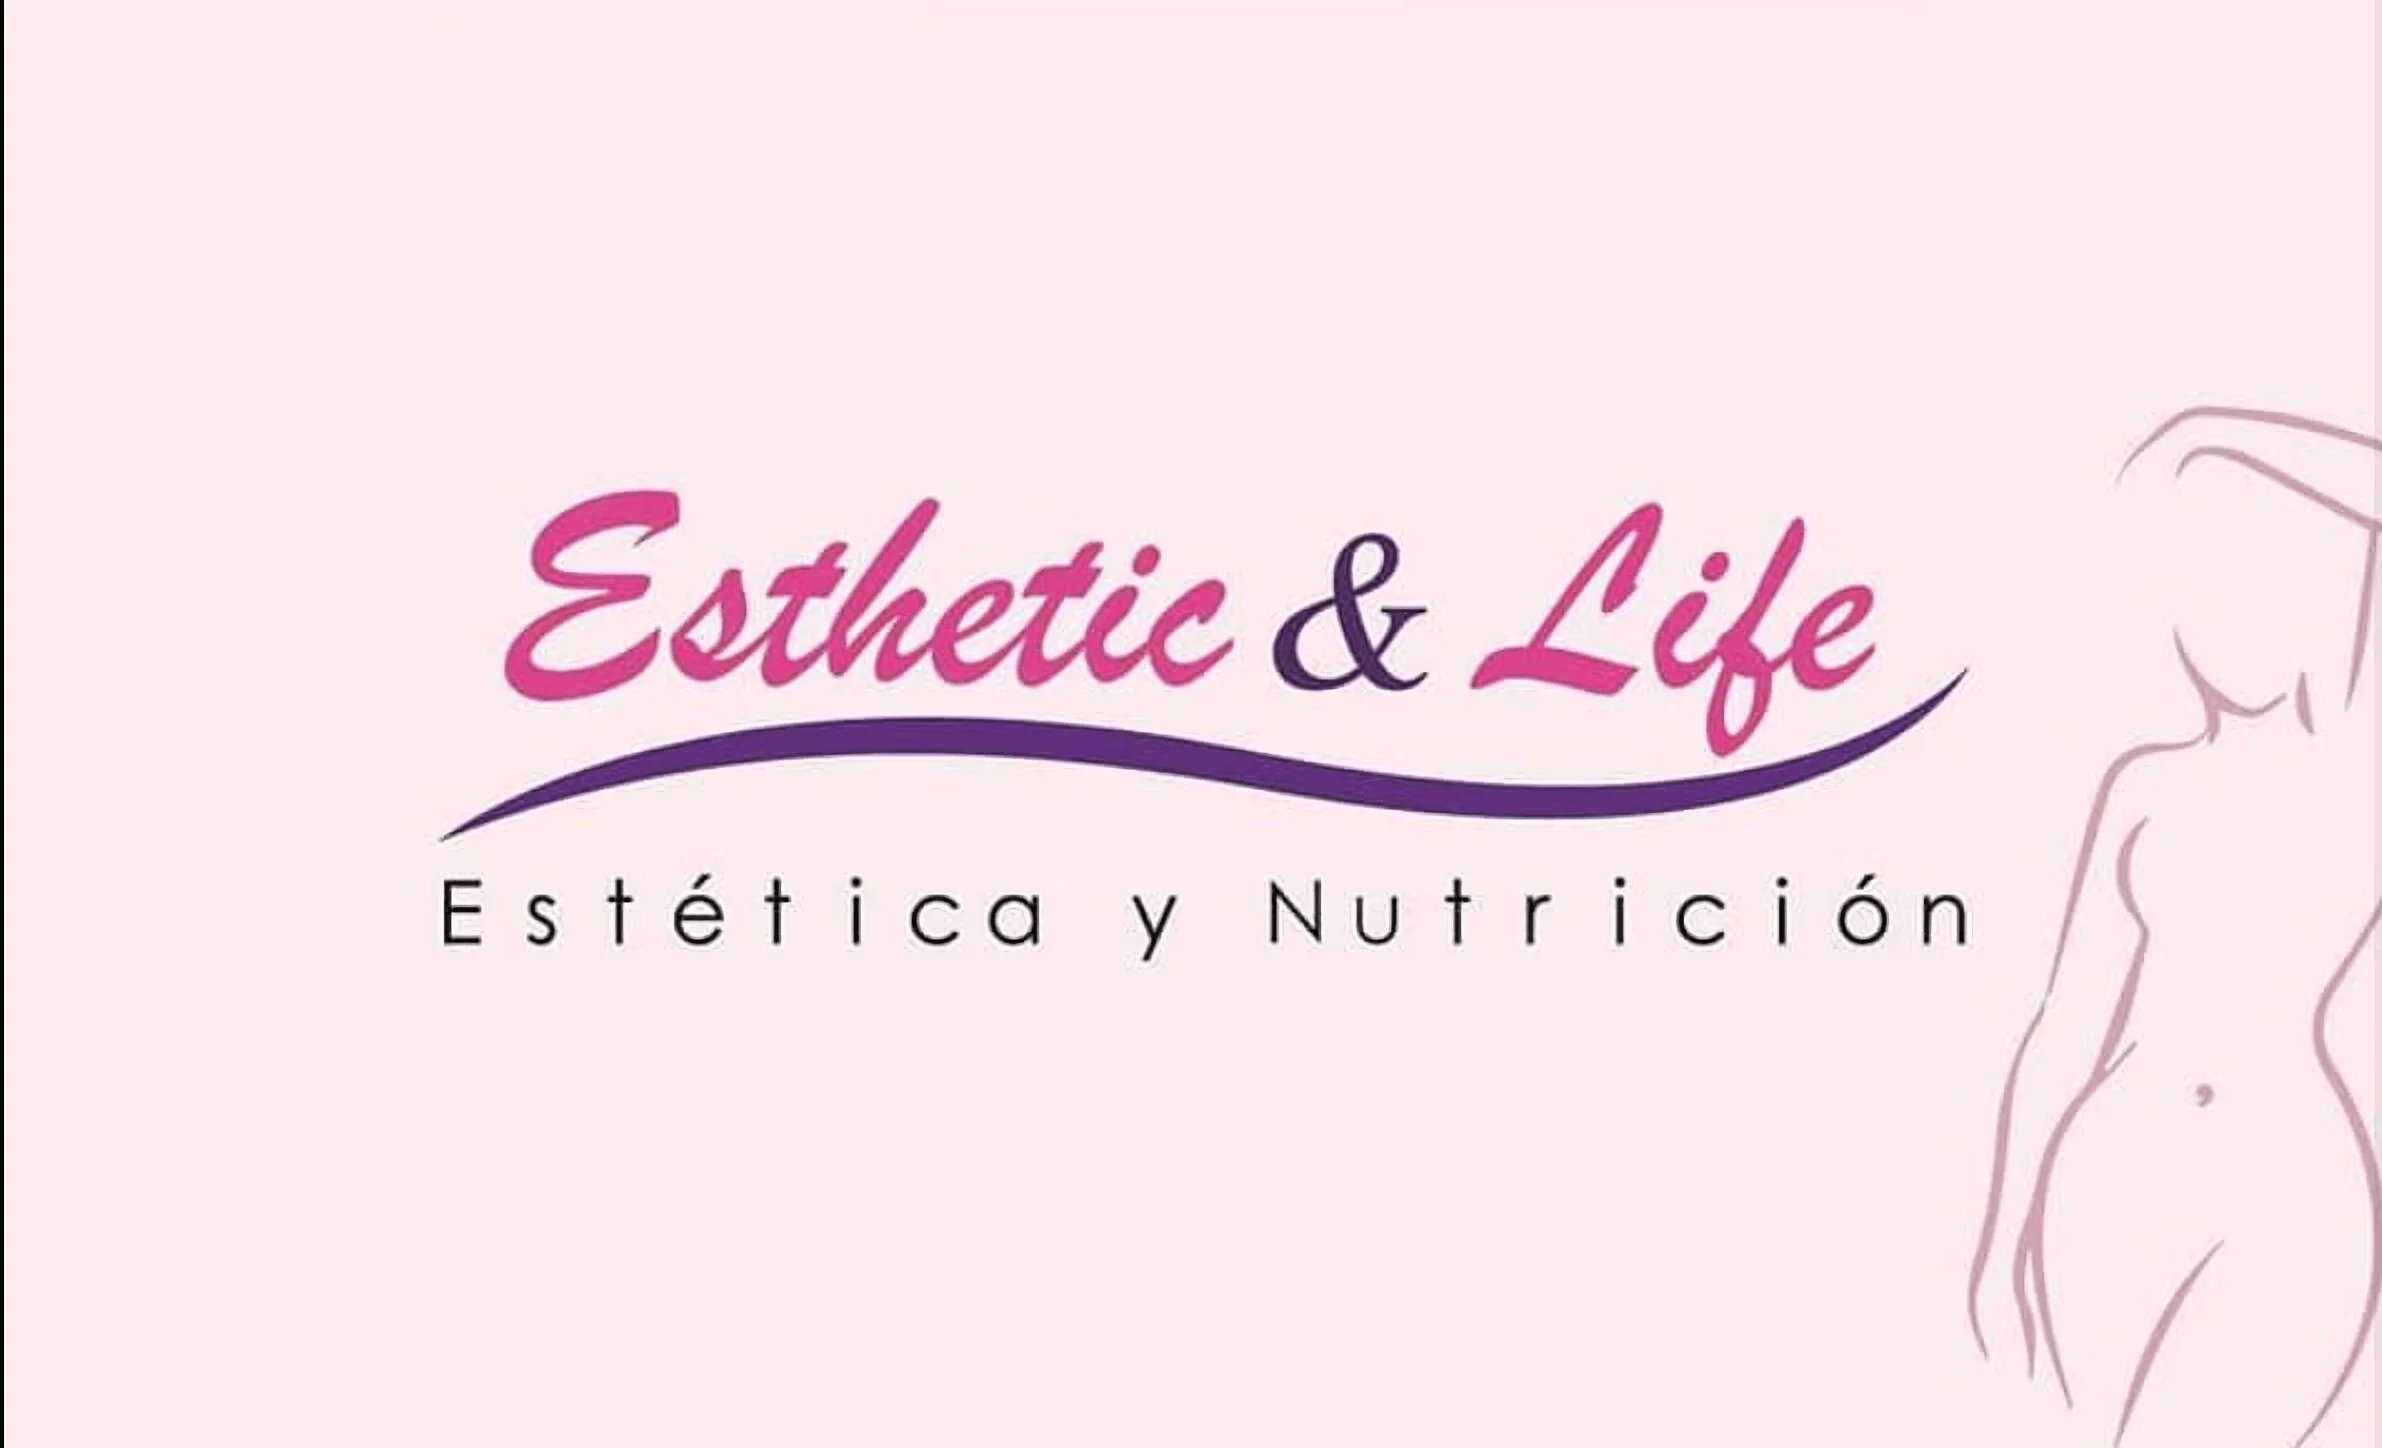 Esthetic & Life Centro de Nutrición y Estética-1262